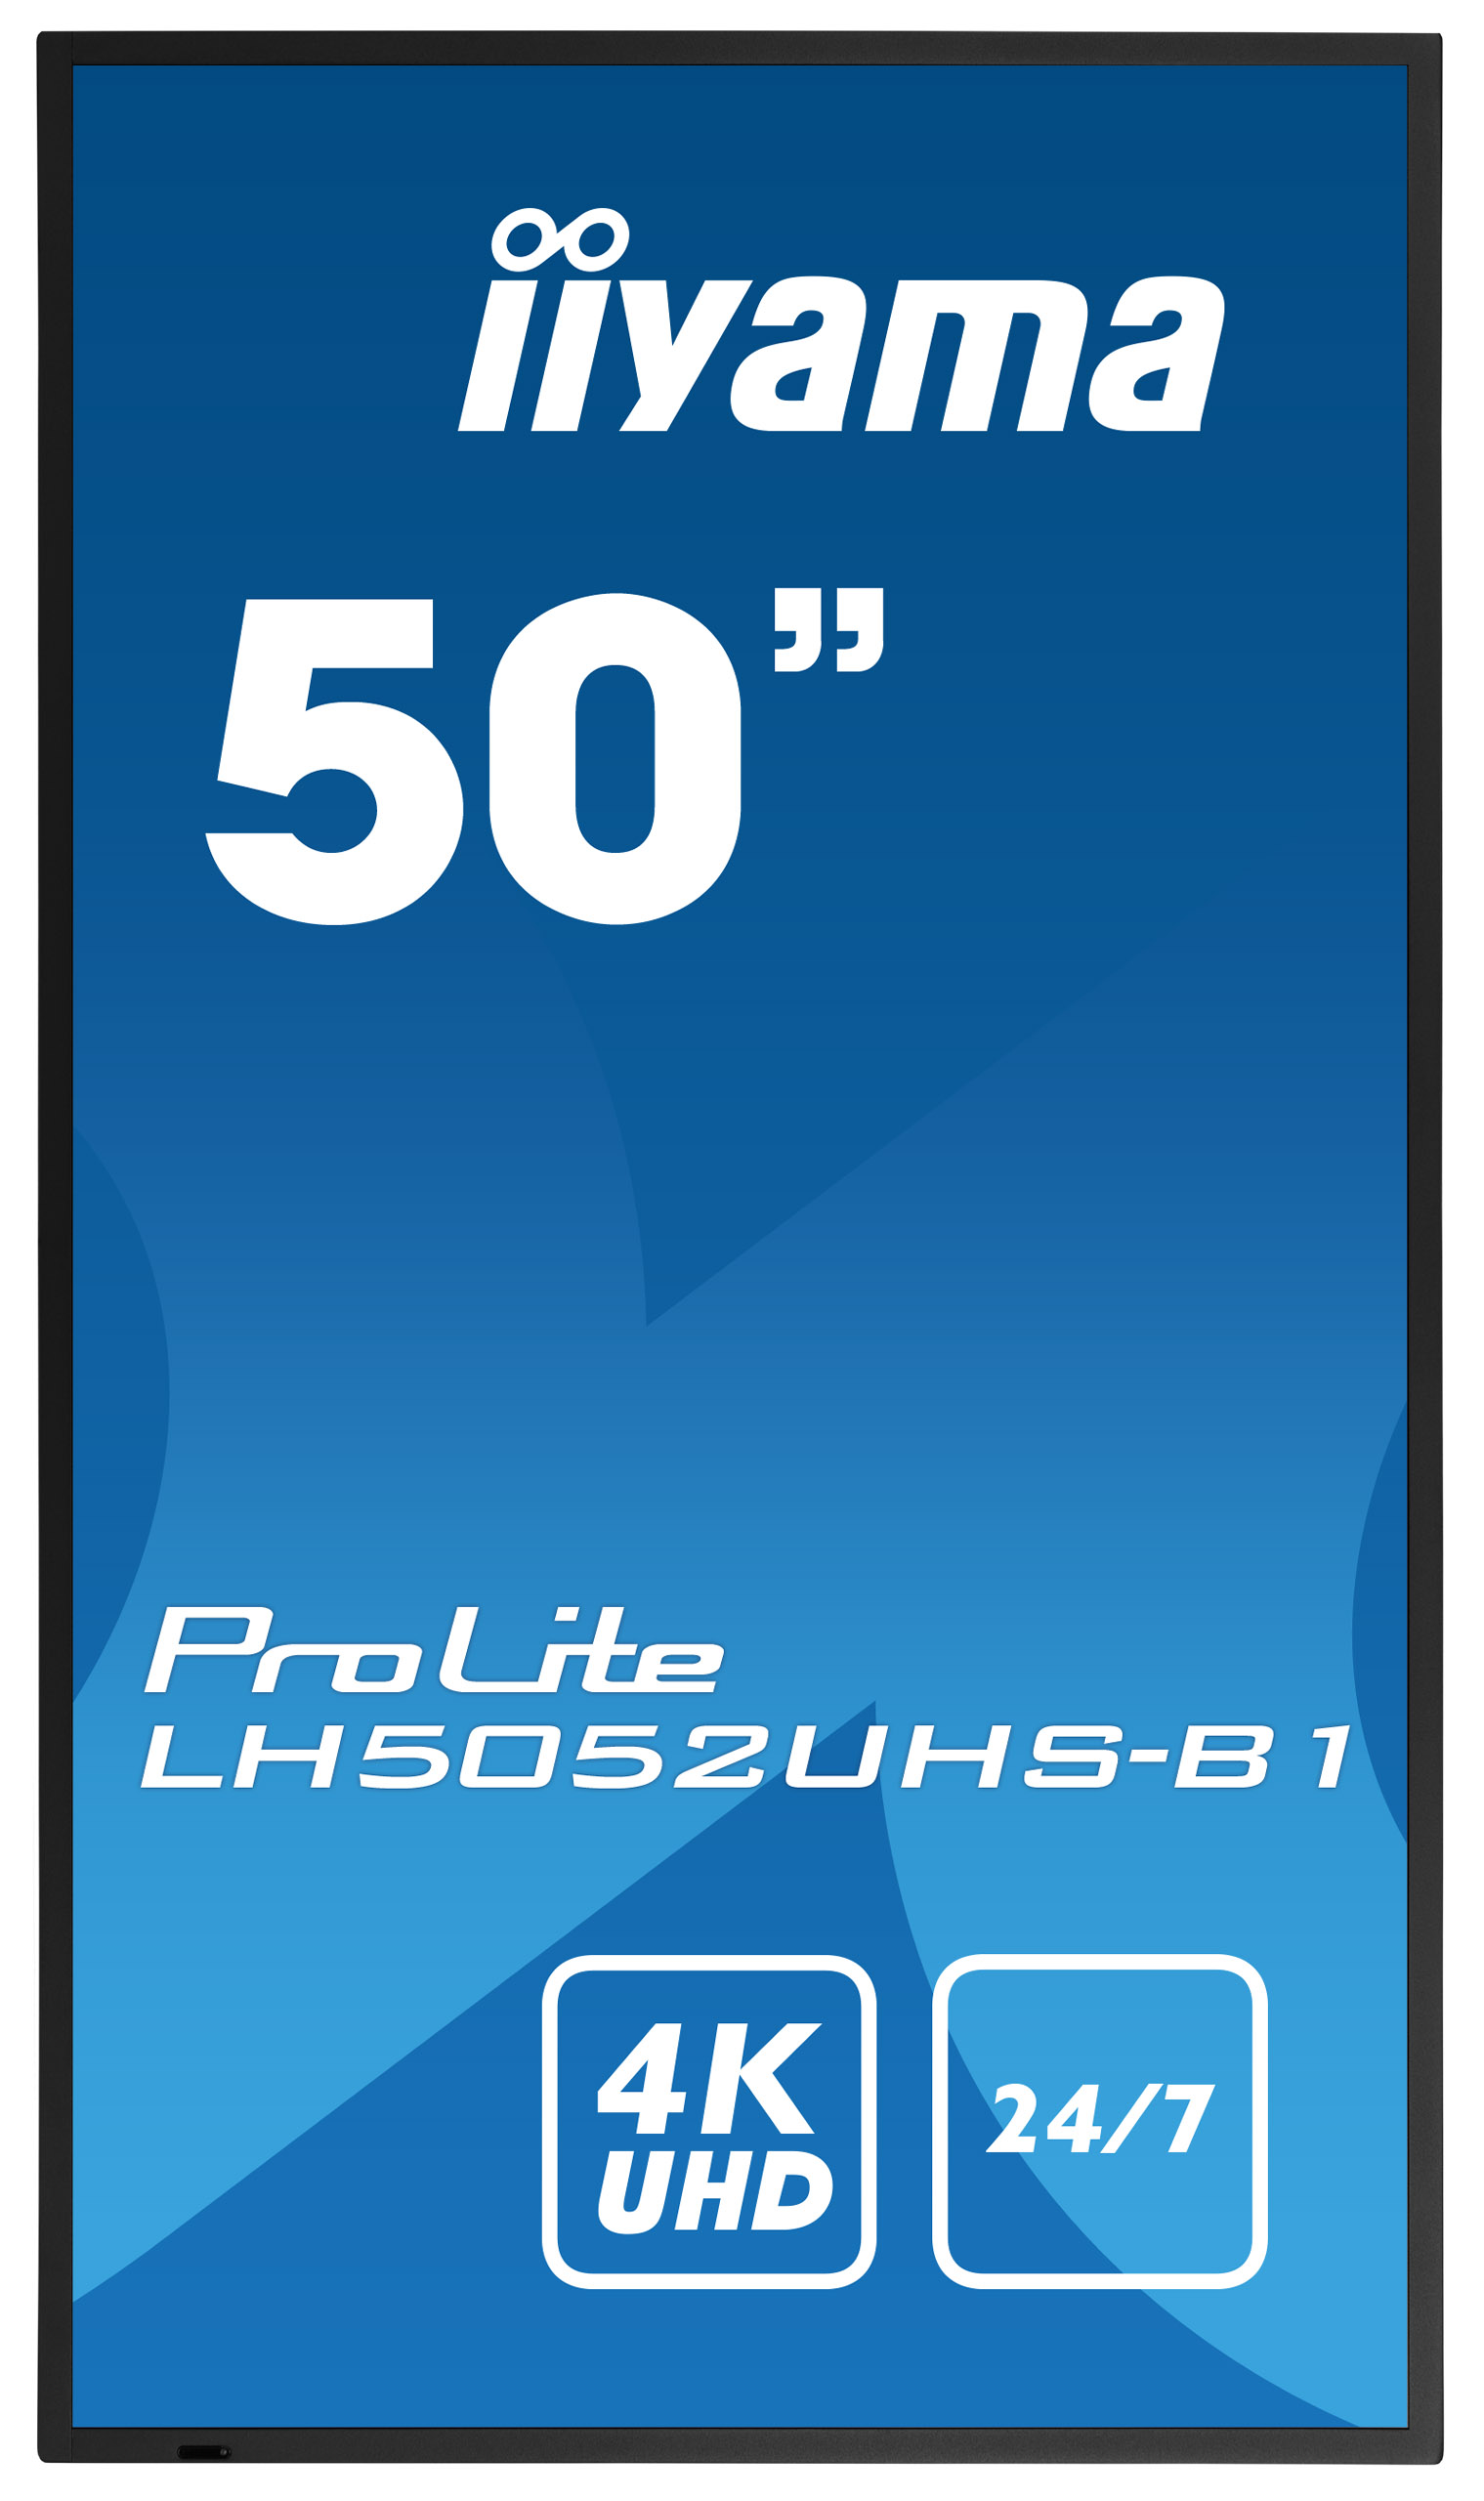 Iiyama ProLite LH5052UHS-B1 | 49,5" (125,7cm) | 24/7 Betriebszeit | 4K UHD-Auflösung